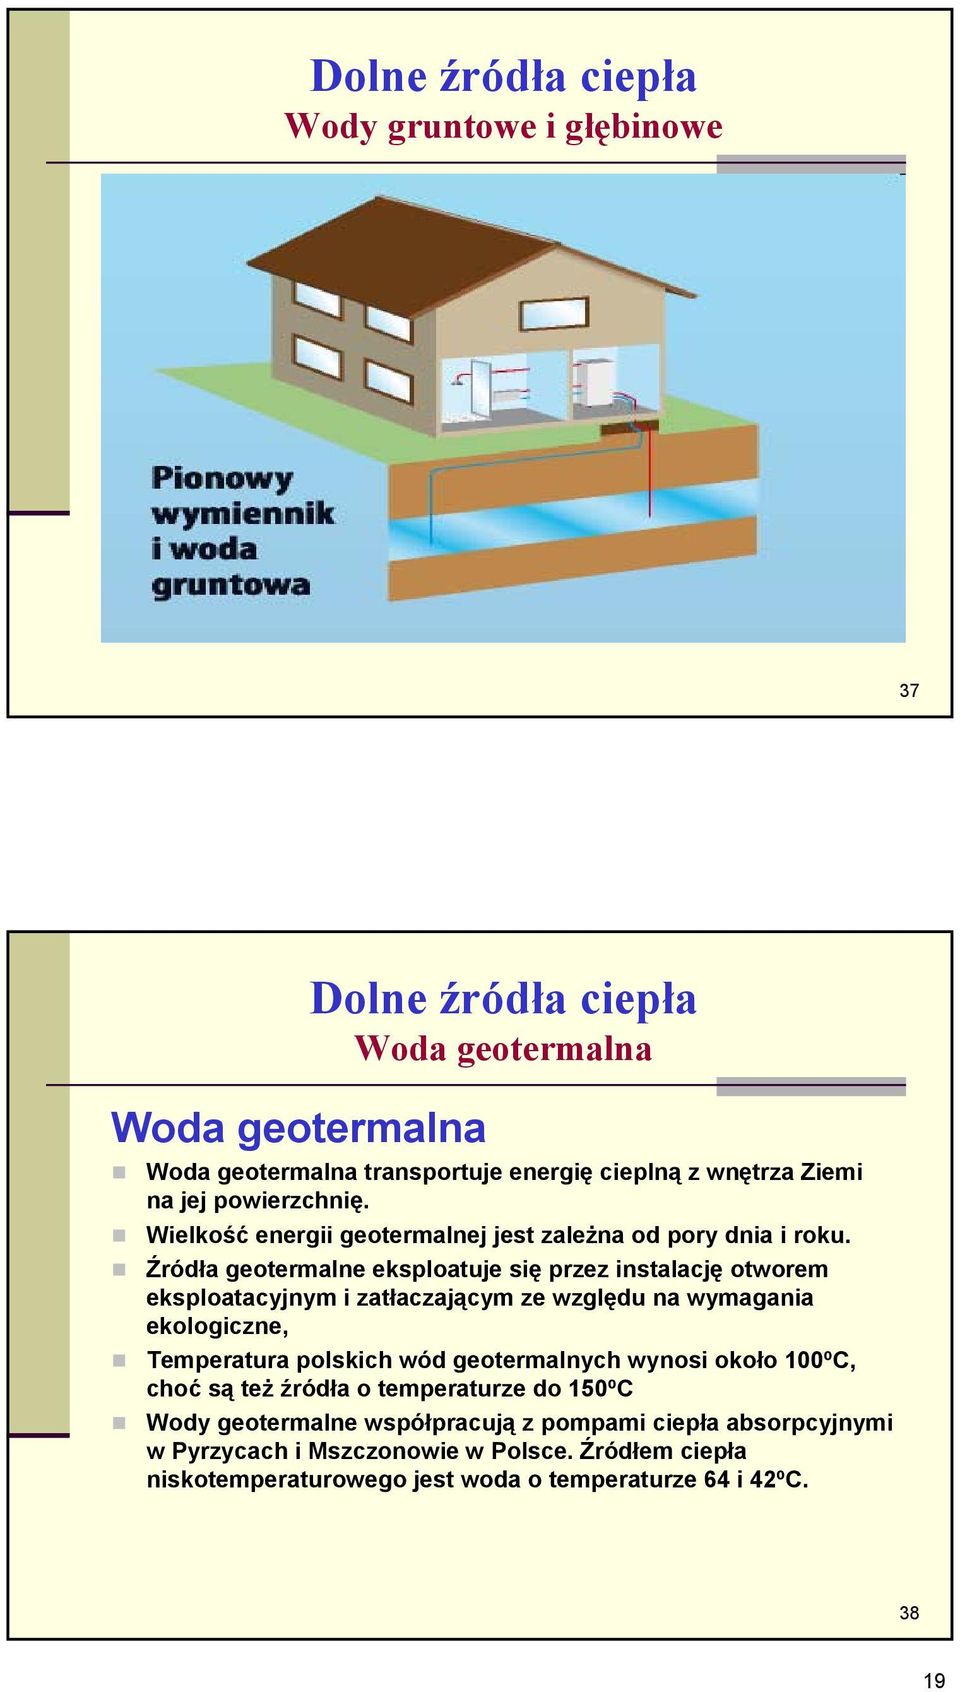 Źródła geotermalne eksploatuje się przez instalację otworem eksploatacyjnym i zatłaczającym ze względu na wymagania ekologiczne, Temperatura polskich wód